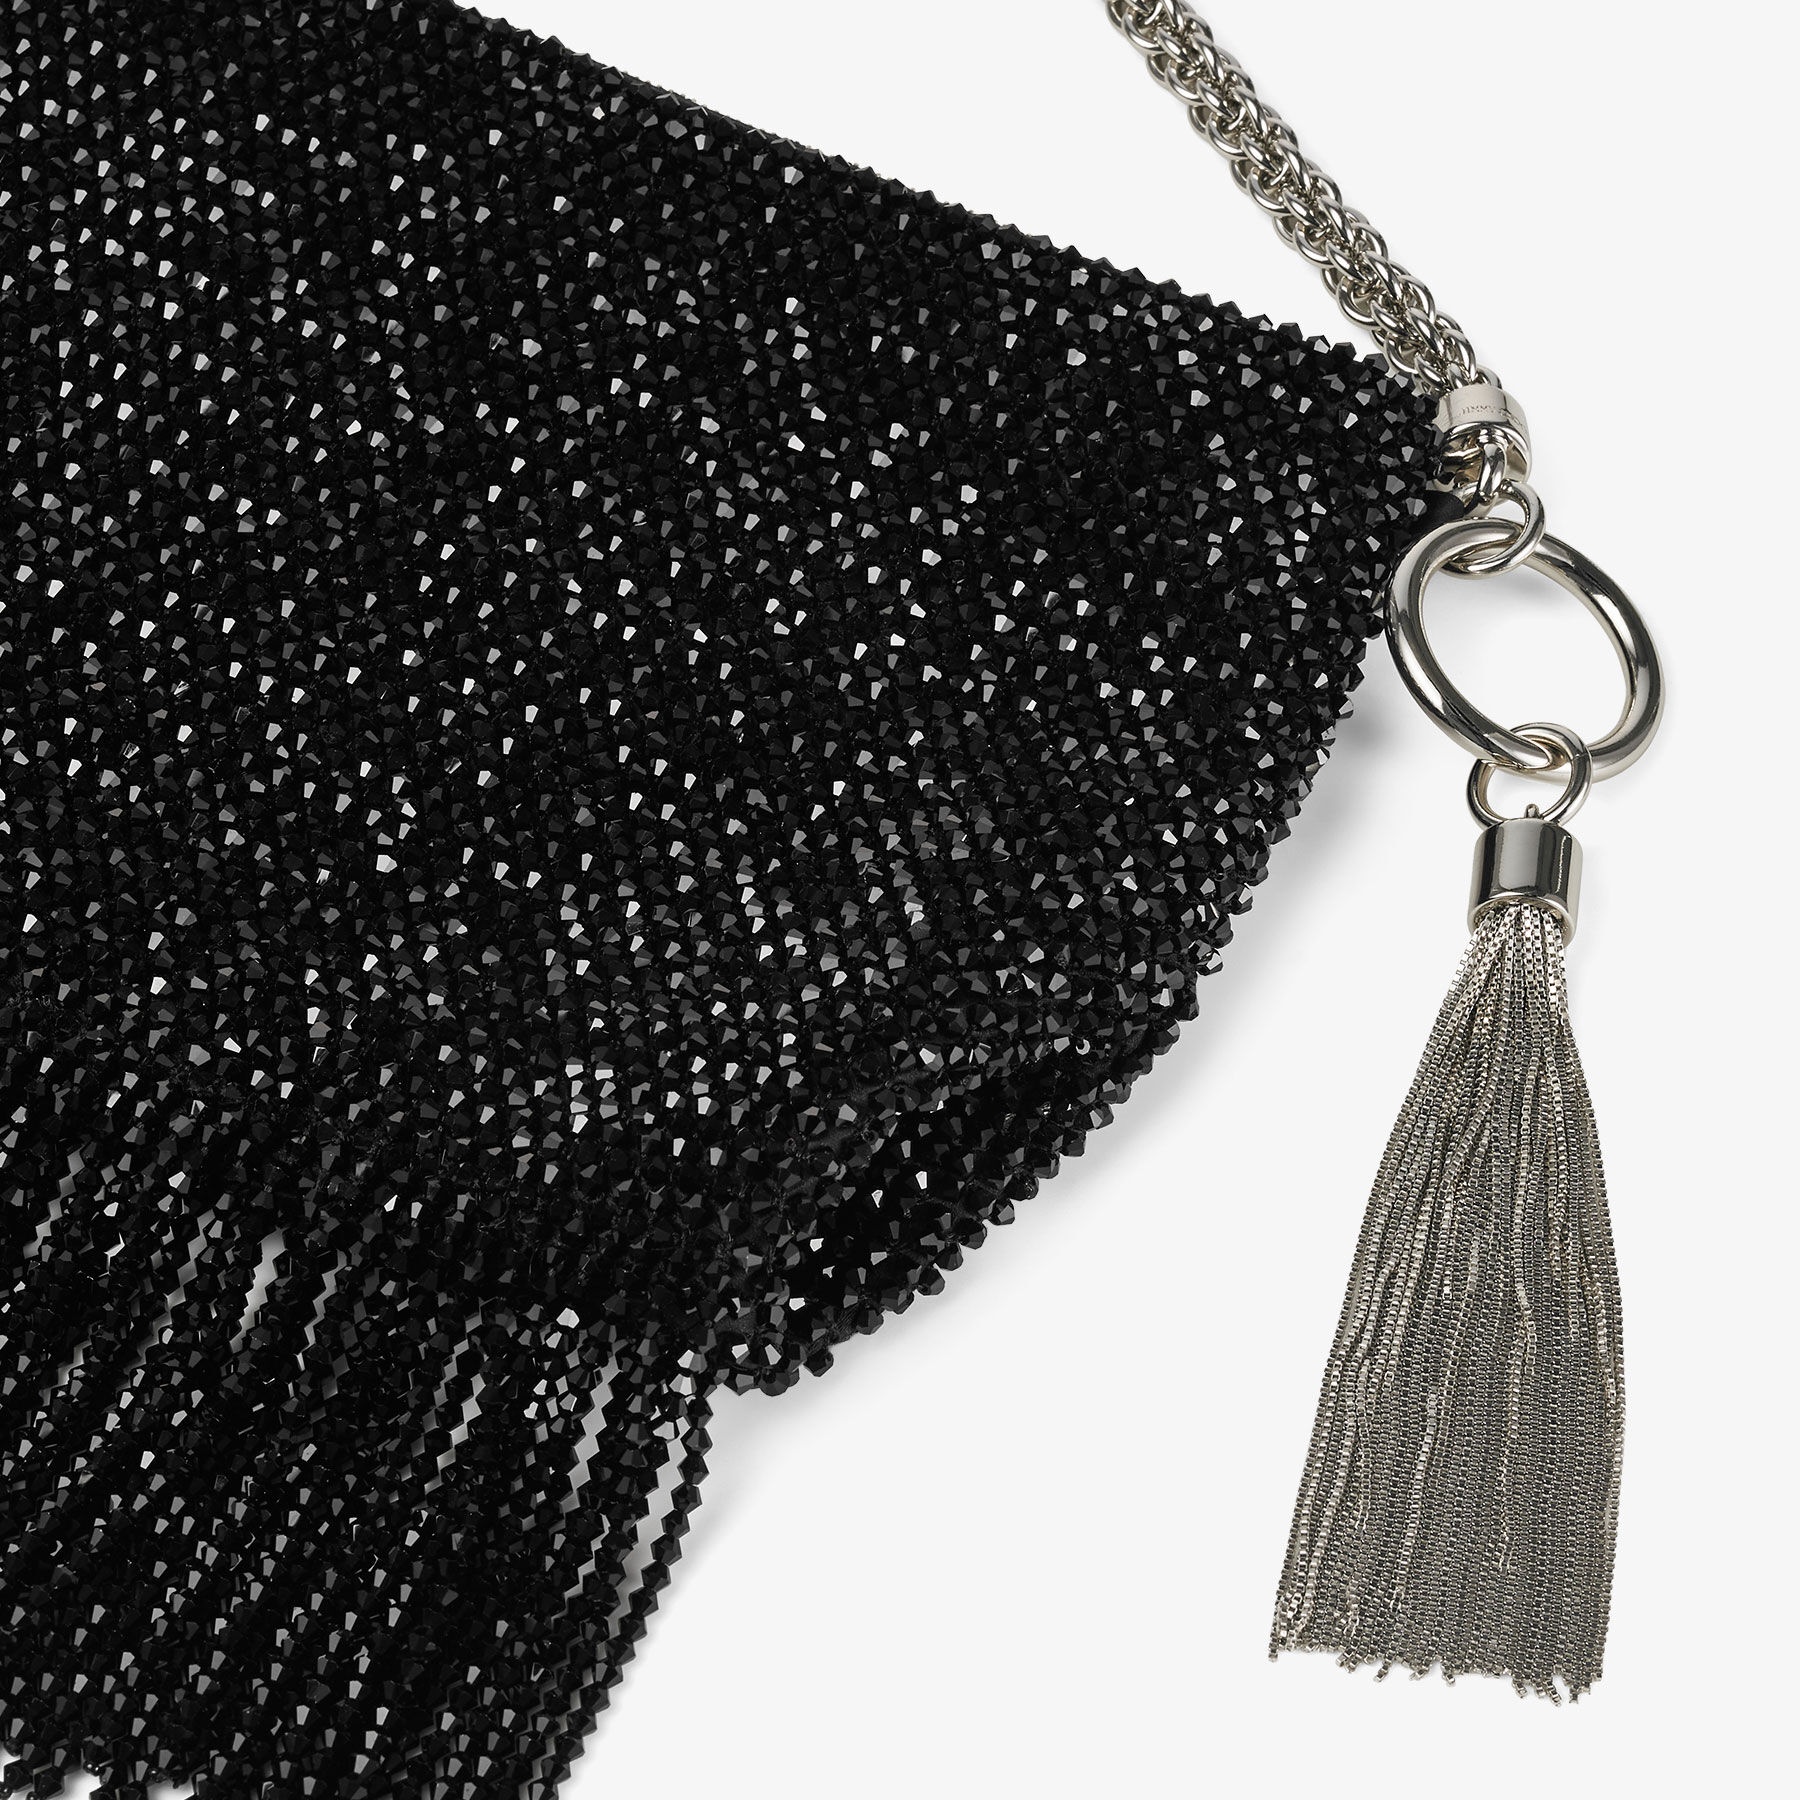 Callie  Shoulder
Black Satin Shoulder Bag with Crystal Fringe - 3